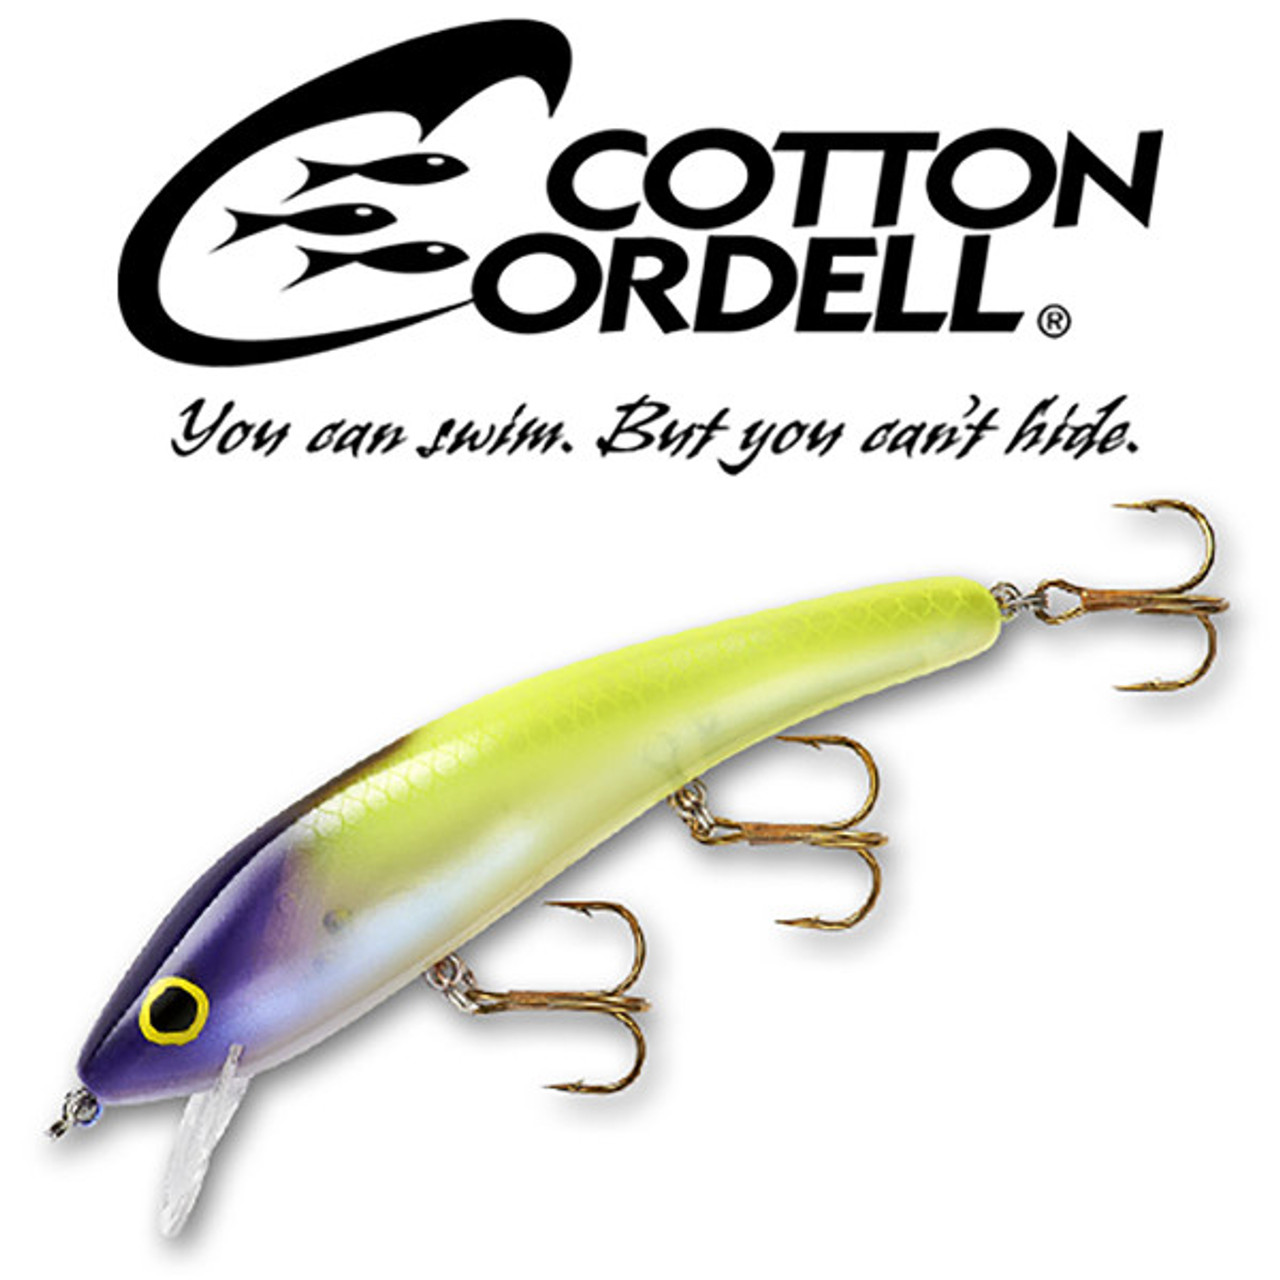 Cotton Cordell Ripplin' Red Fin, 4.5", 3/8 oz